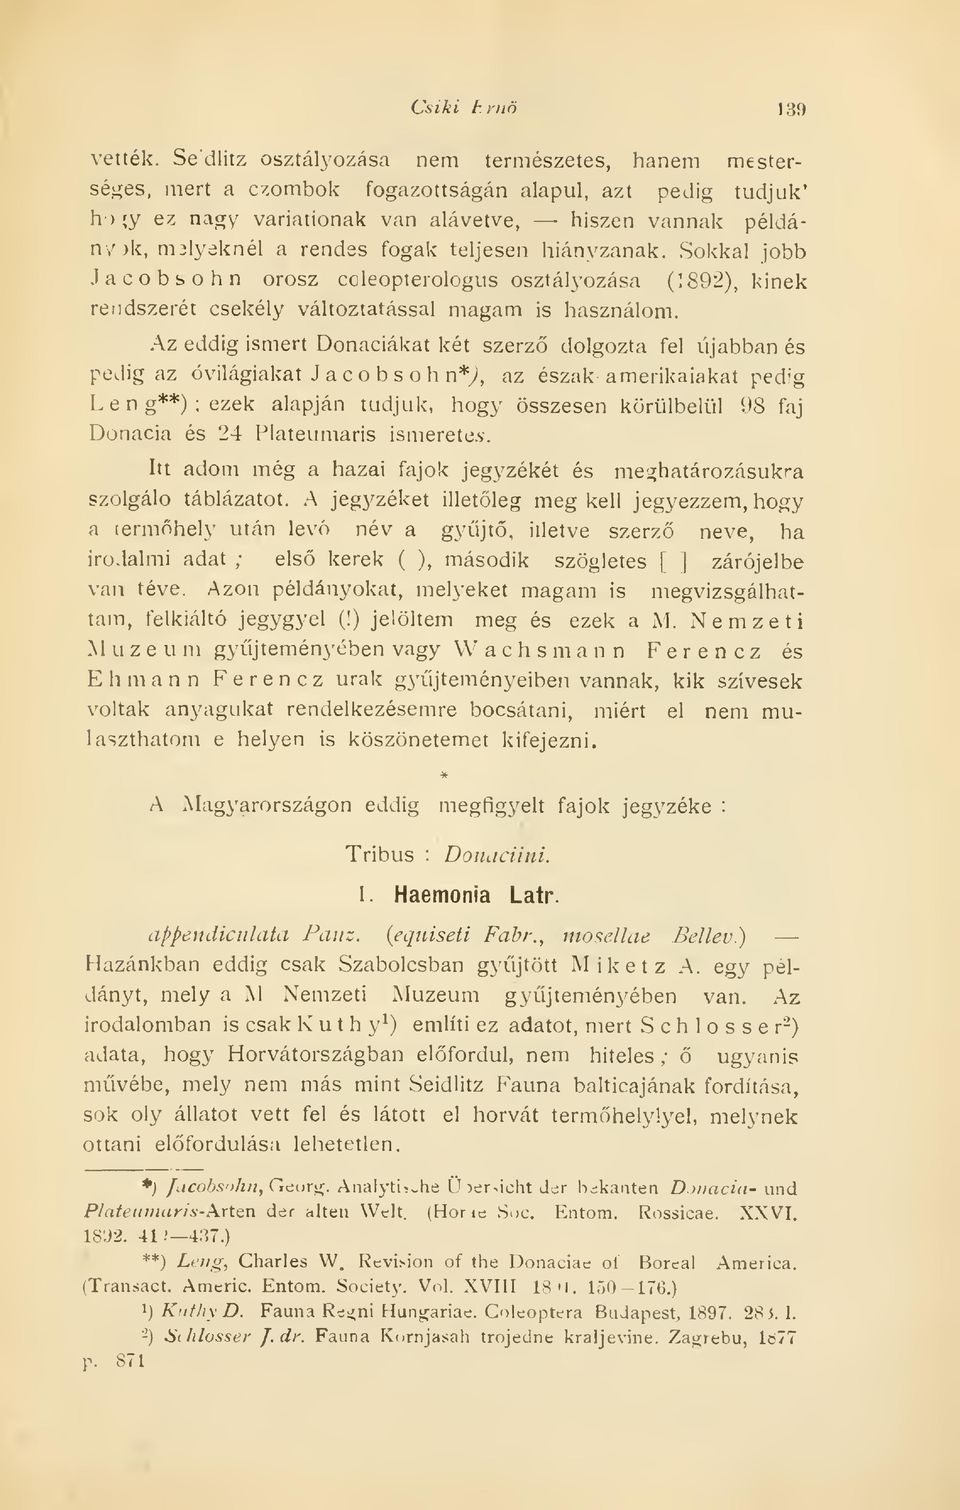 fogak teljesen hiányzanak. Sokkal jobb Jacobsohn orosz coleopterologus osztályozása (1892), kinek rendszerét csekély változtatással magam is használom.